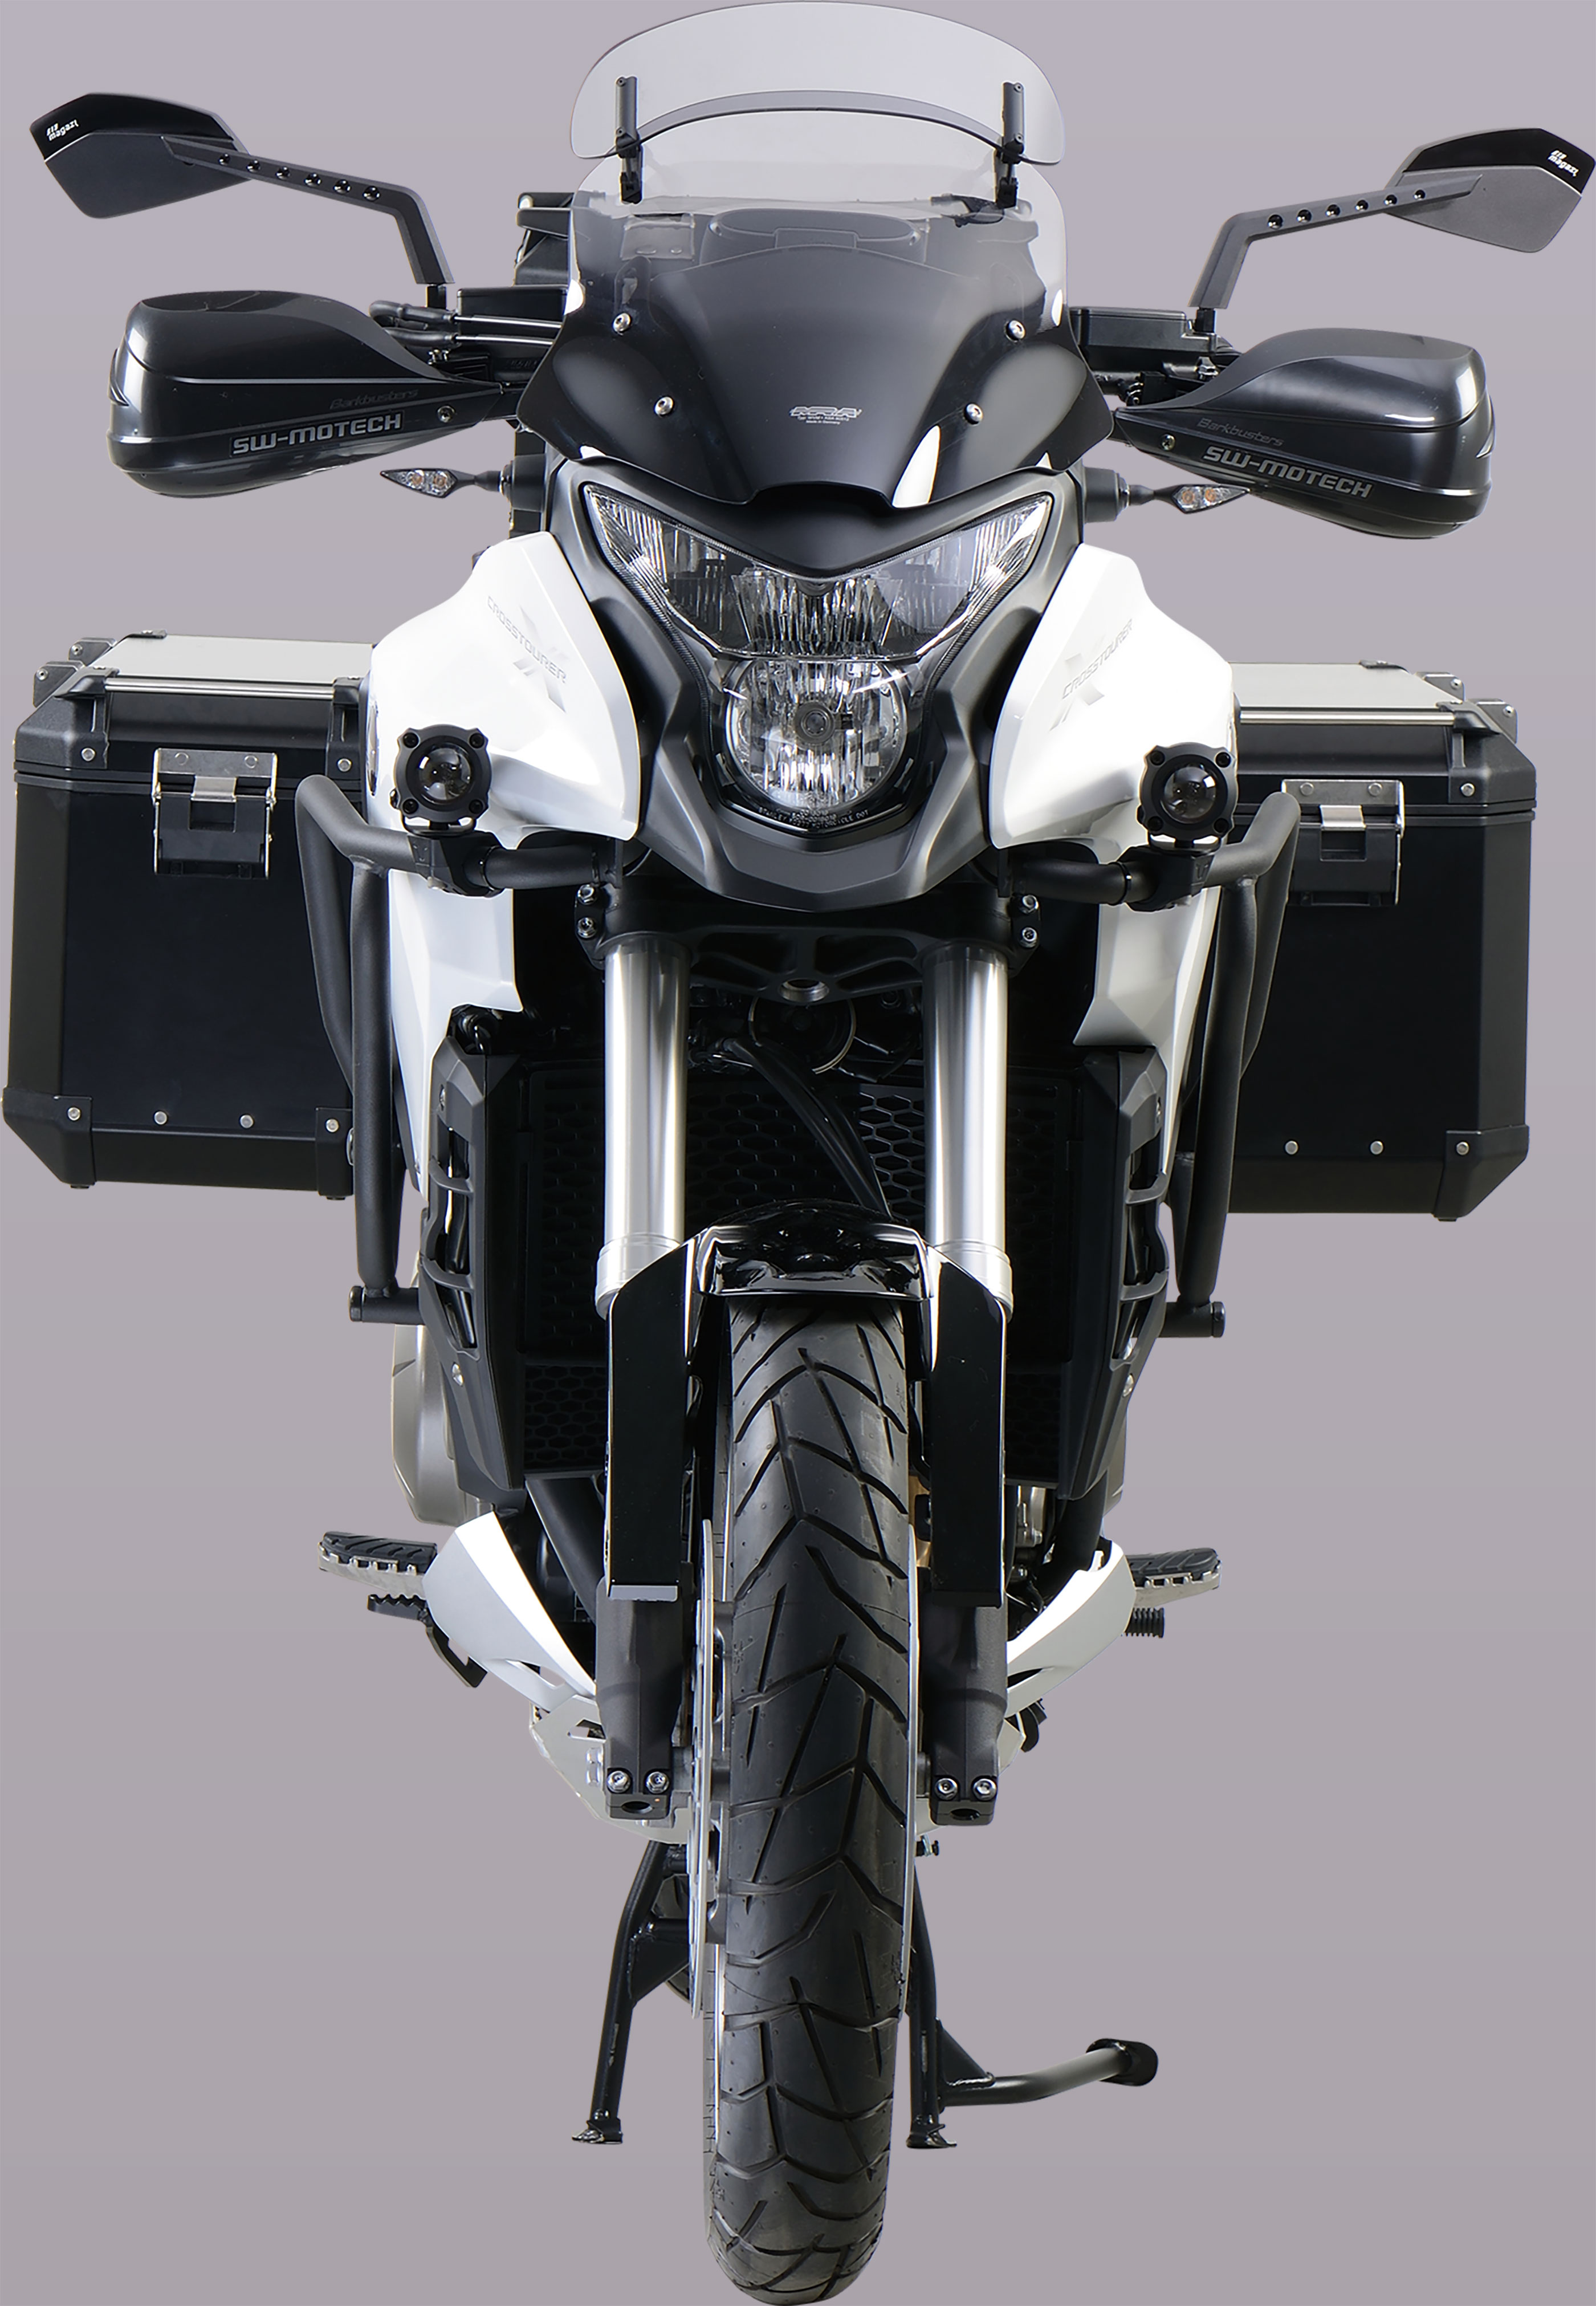 Honda VFR 1200 X Bike | 🏍